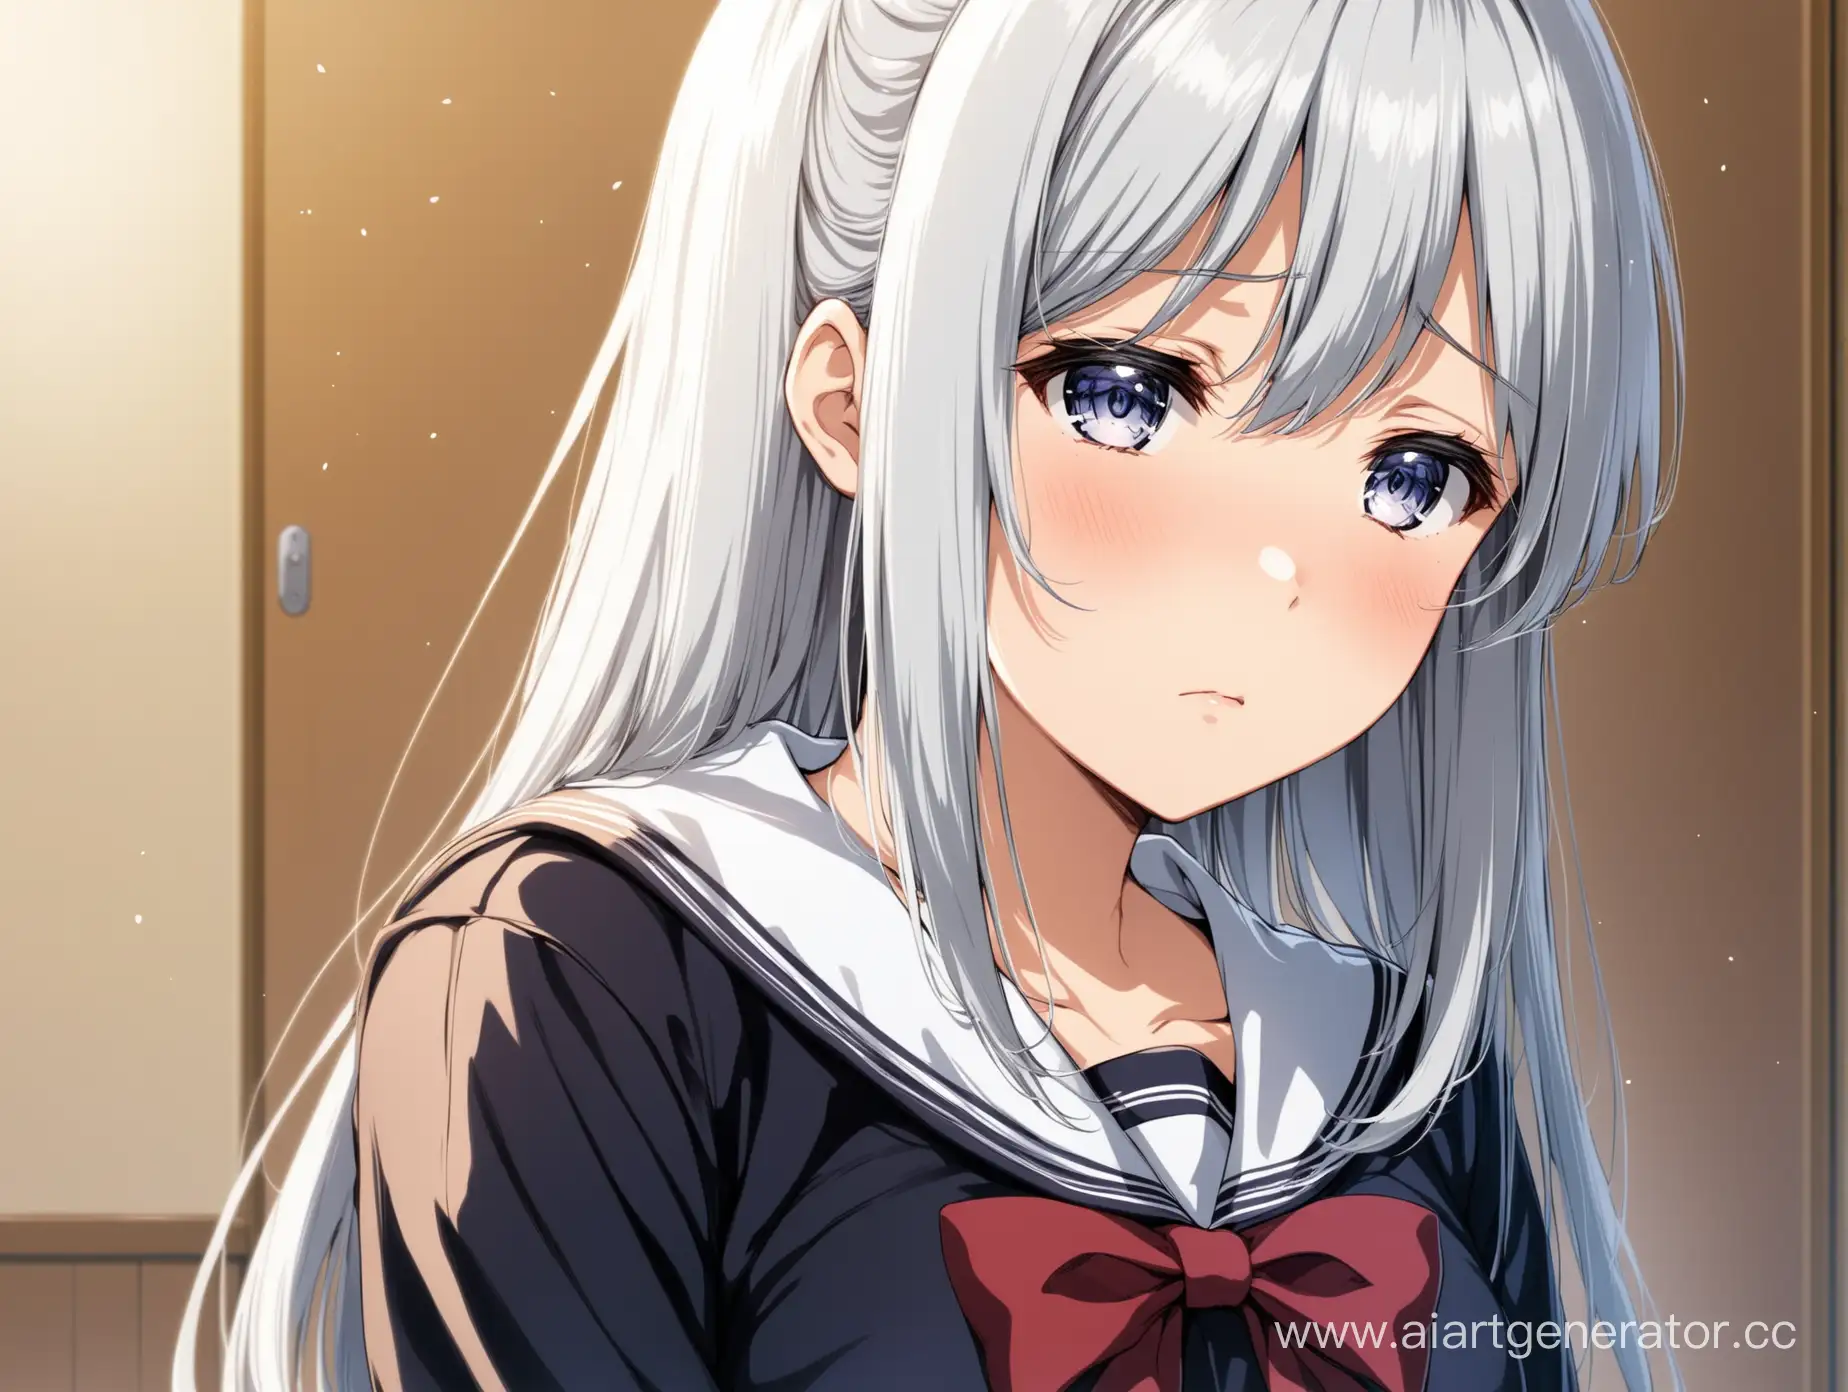 Очень красивая и грустная аниме школьница с серебренными волосами и средним размером груди